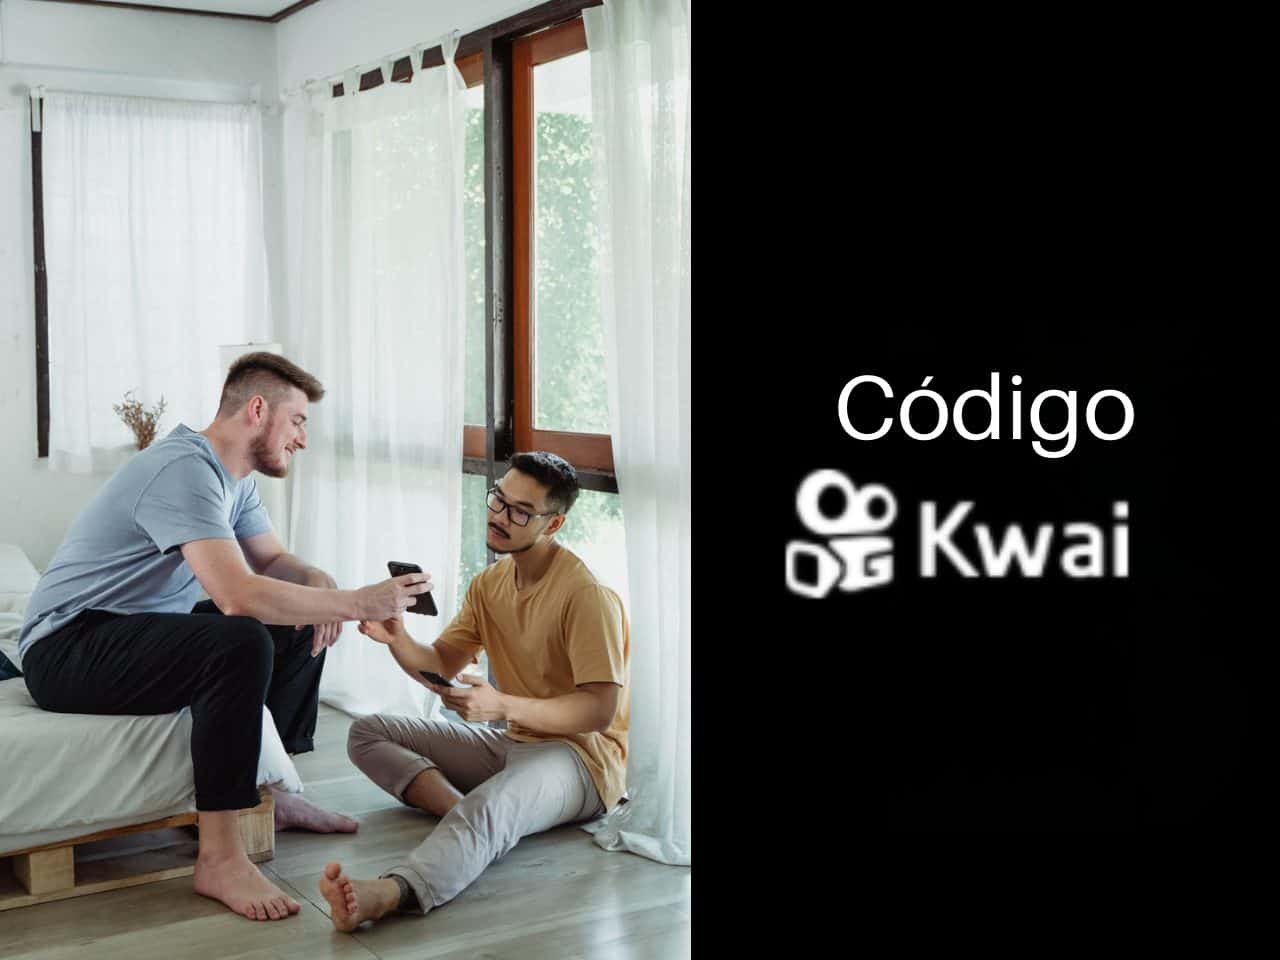 Codigo Kwai - Ganhe até 600R$ Coloque o Código de Convite Kwai 334 770 933